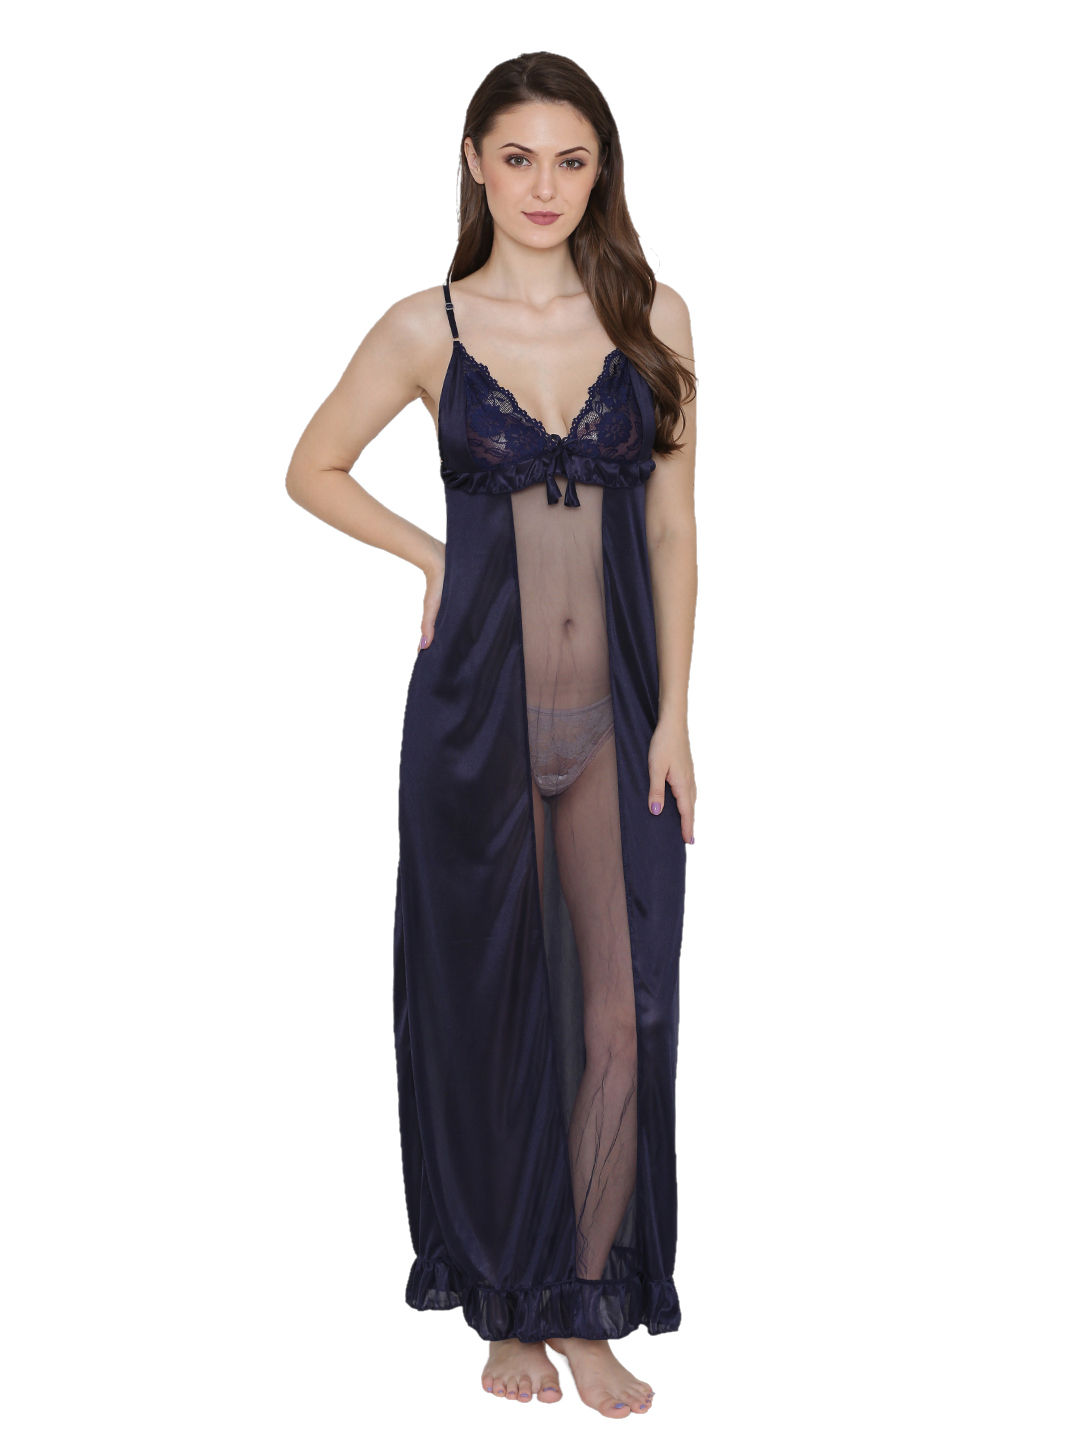 Skkinvalue's Bridal Nightwear 6 Pcs Sets for Women – skkinvalue